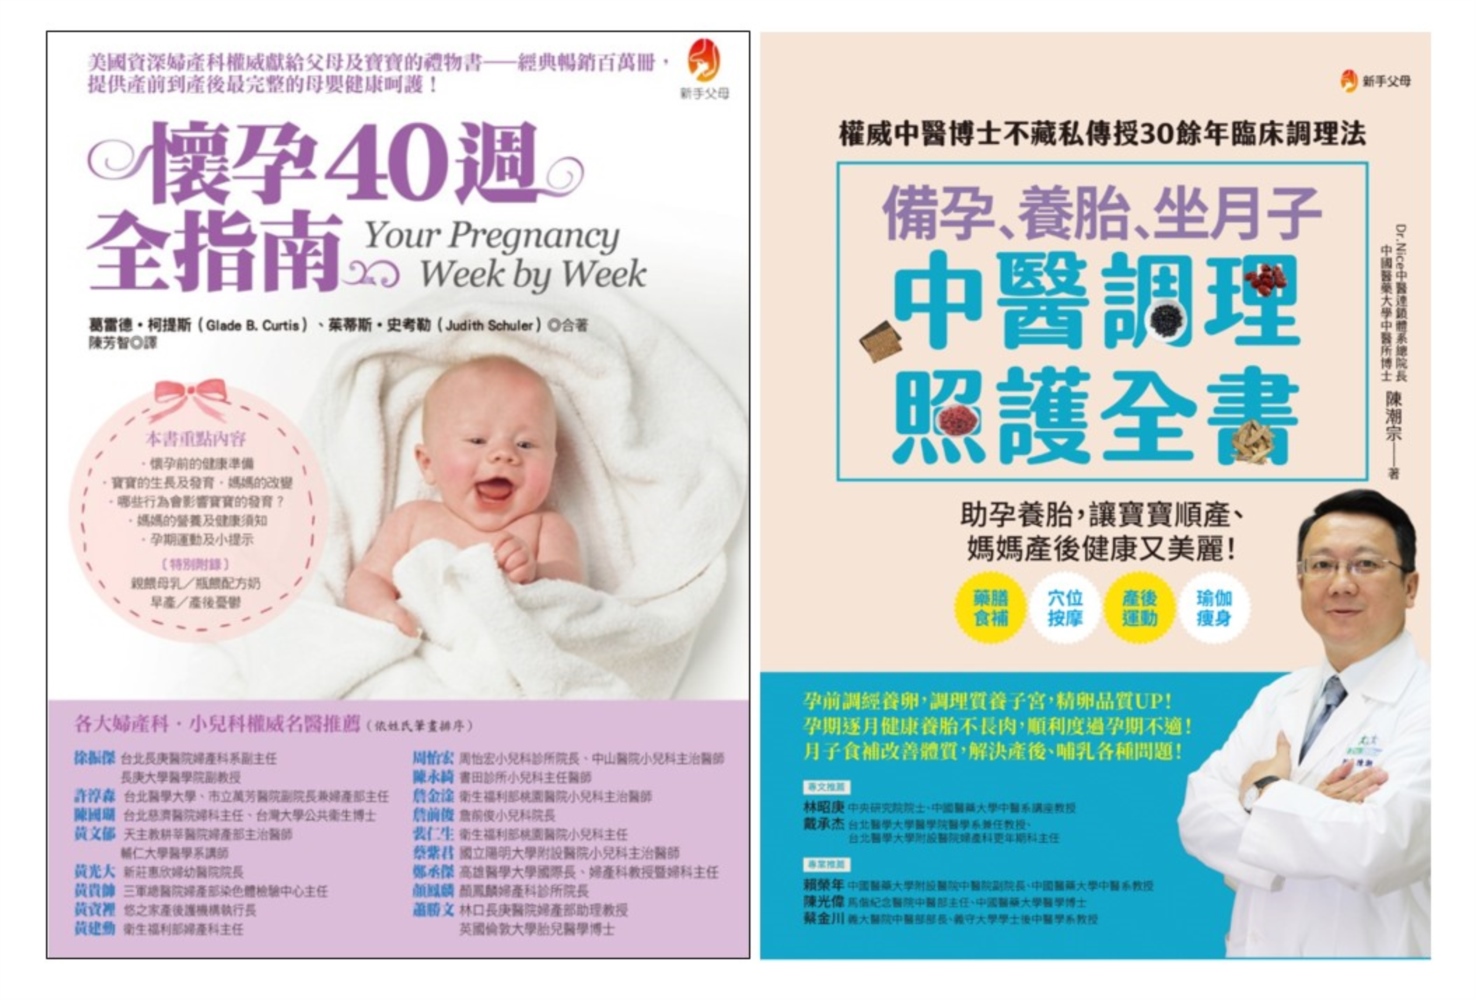 備孕、養胎、坐月子 照護全指南套書(共二本)：備孕、養胎、坐月子  中醫調理照護全書 + 懷孕40週全指南